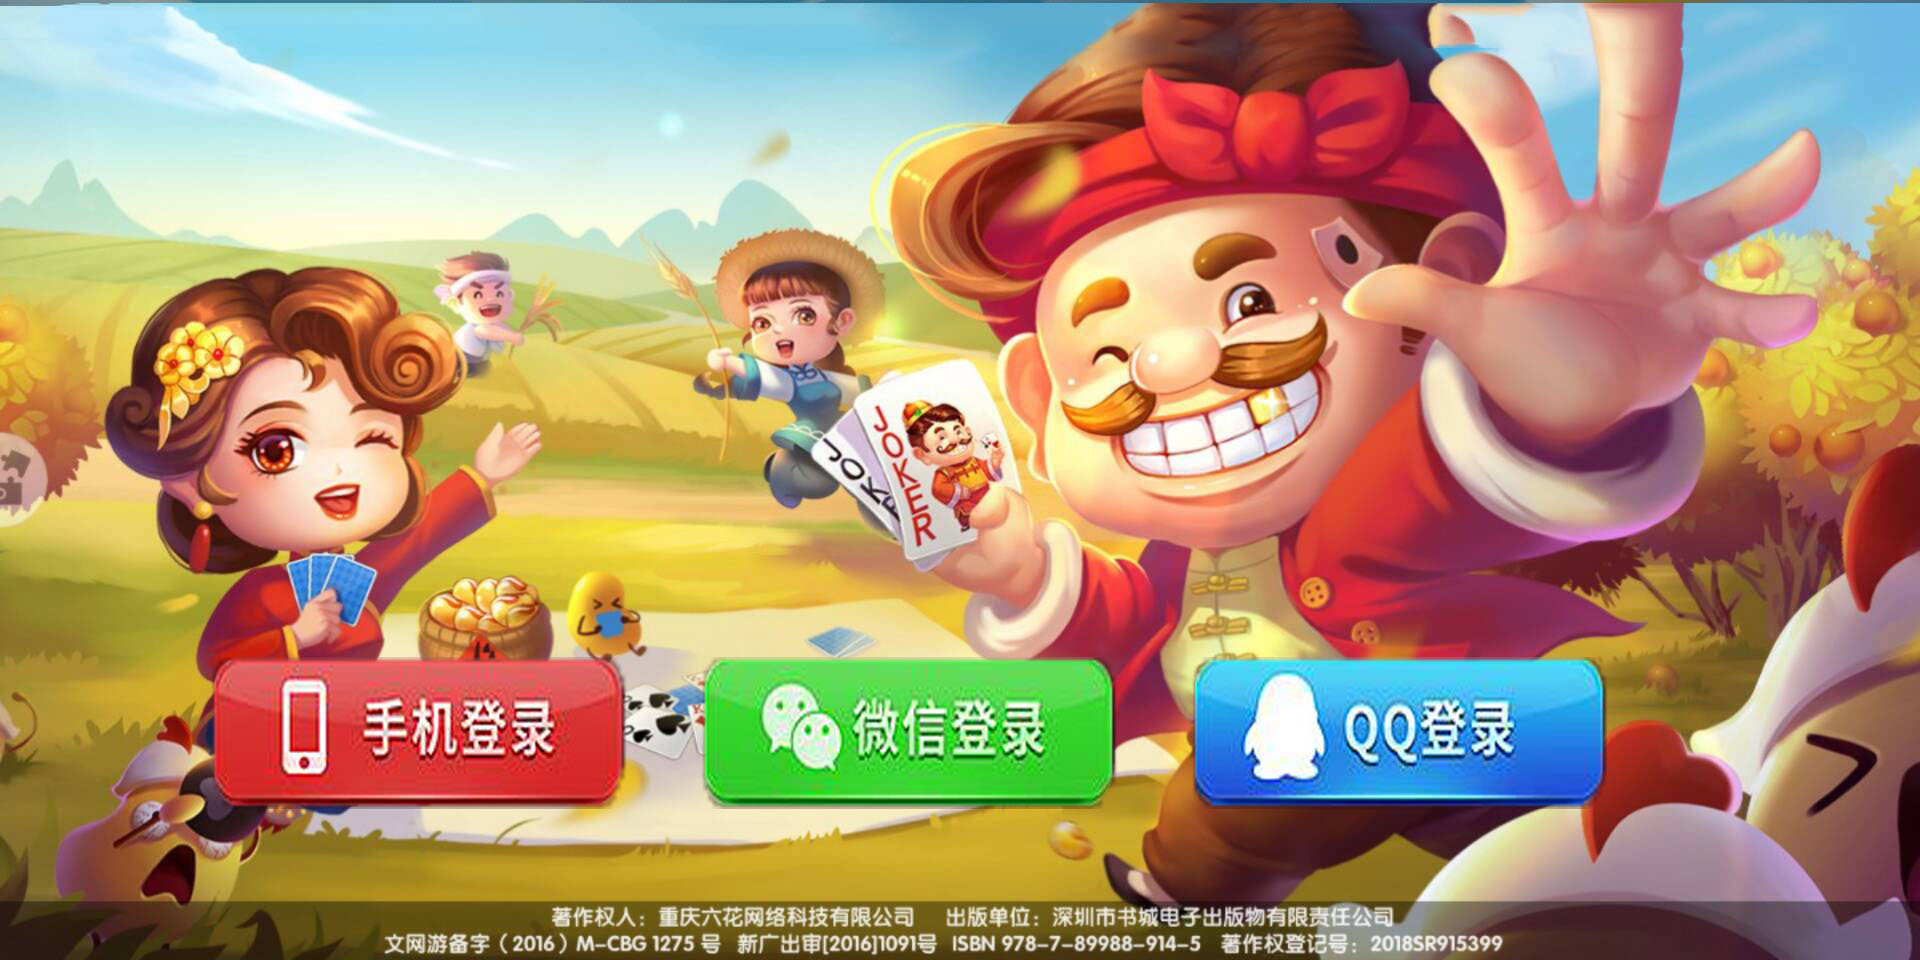 天王棋牌游戏app